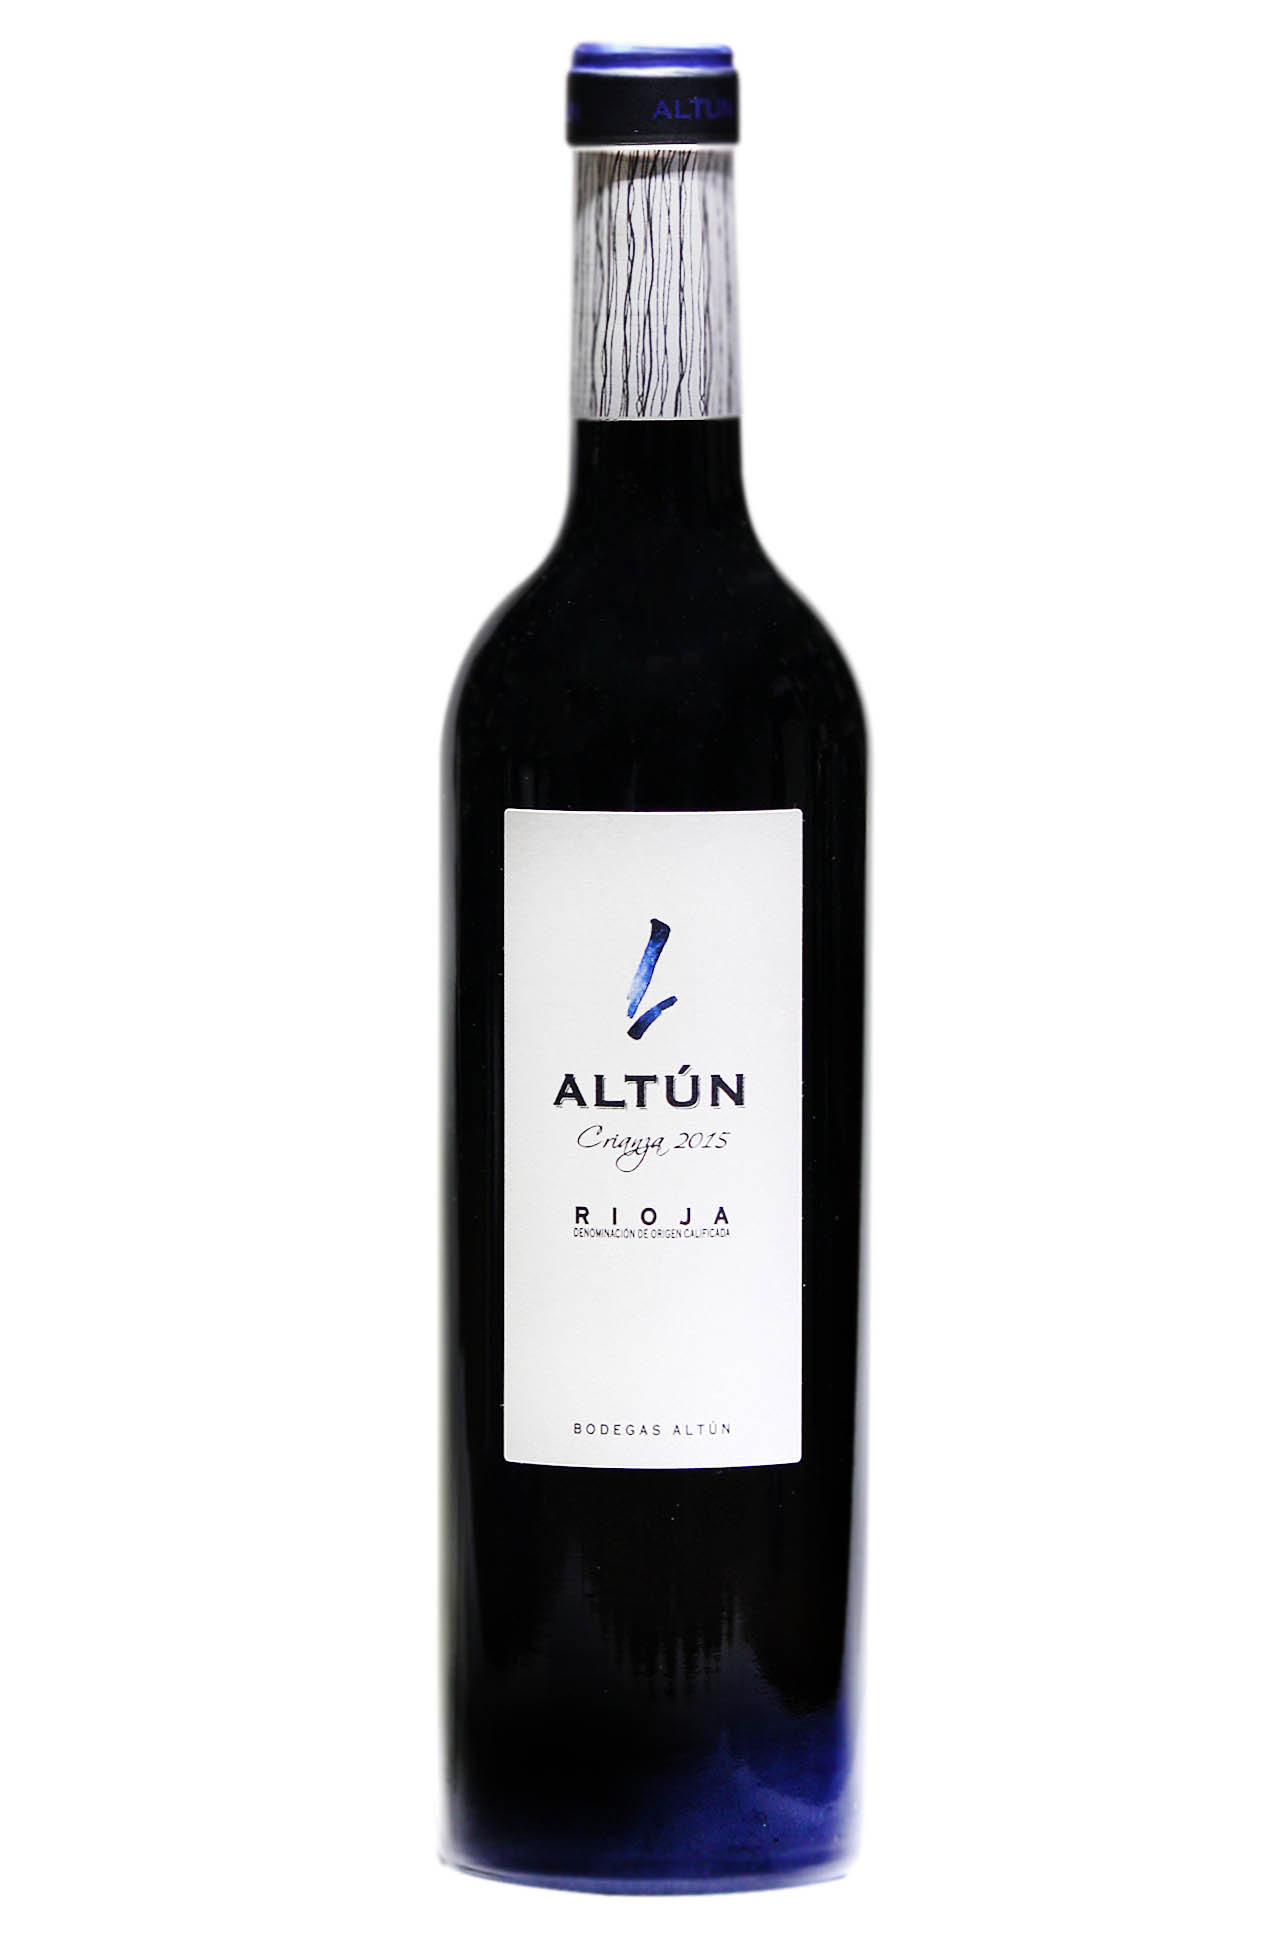 Altun aged red wine